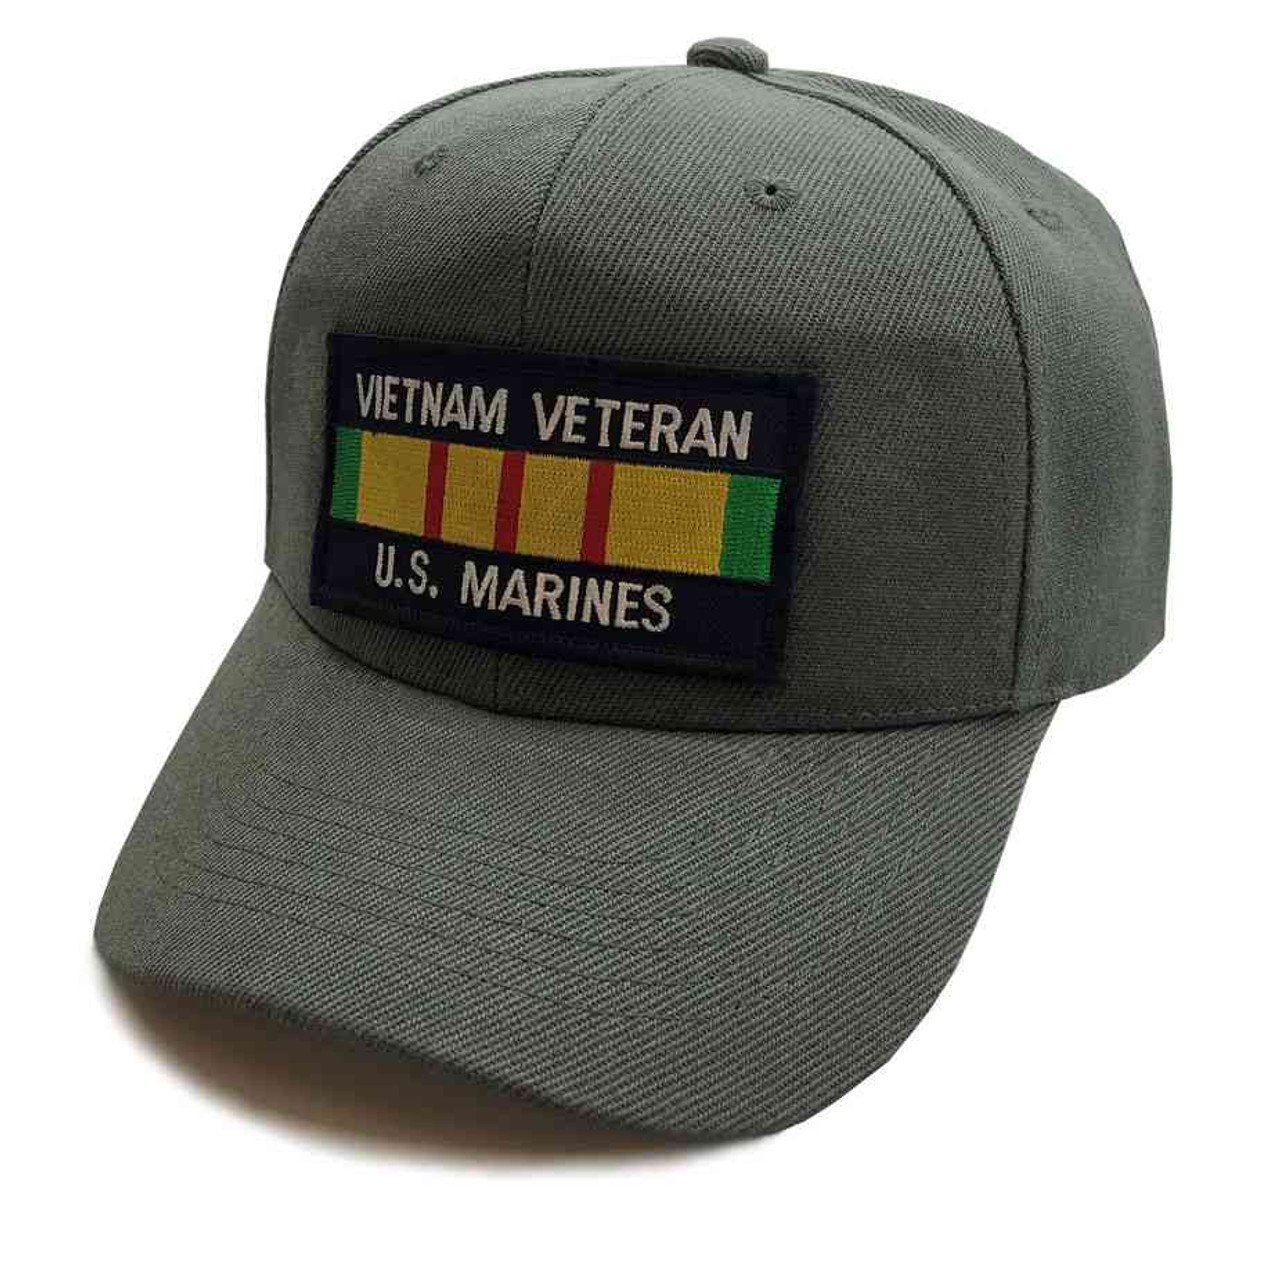 u s marines vietnam vet ribbon special edition dark gray hat